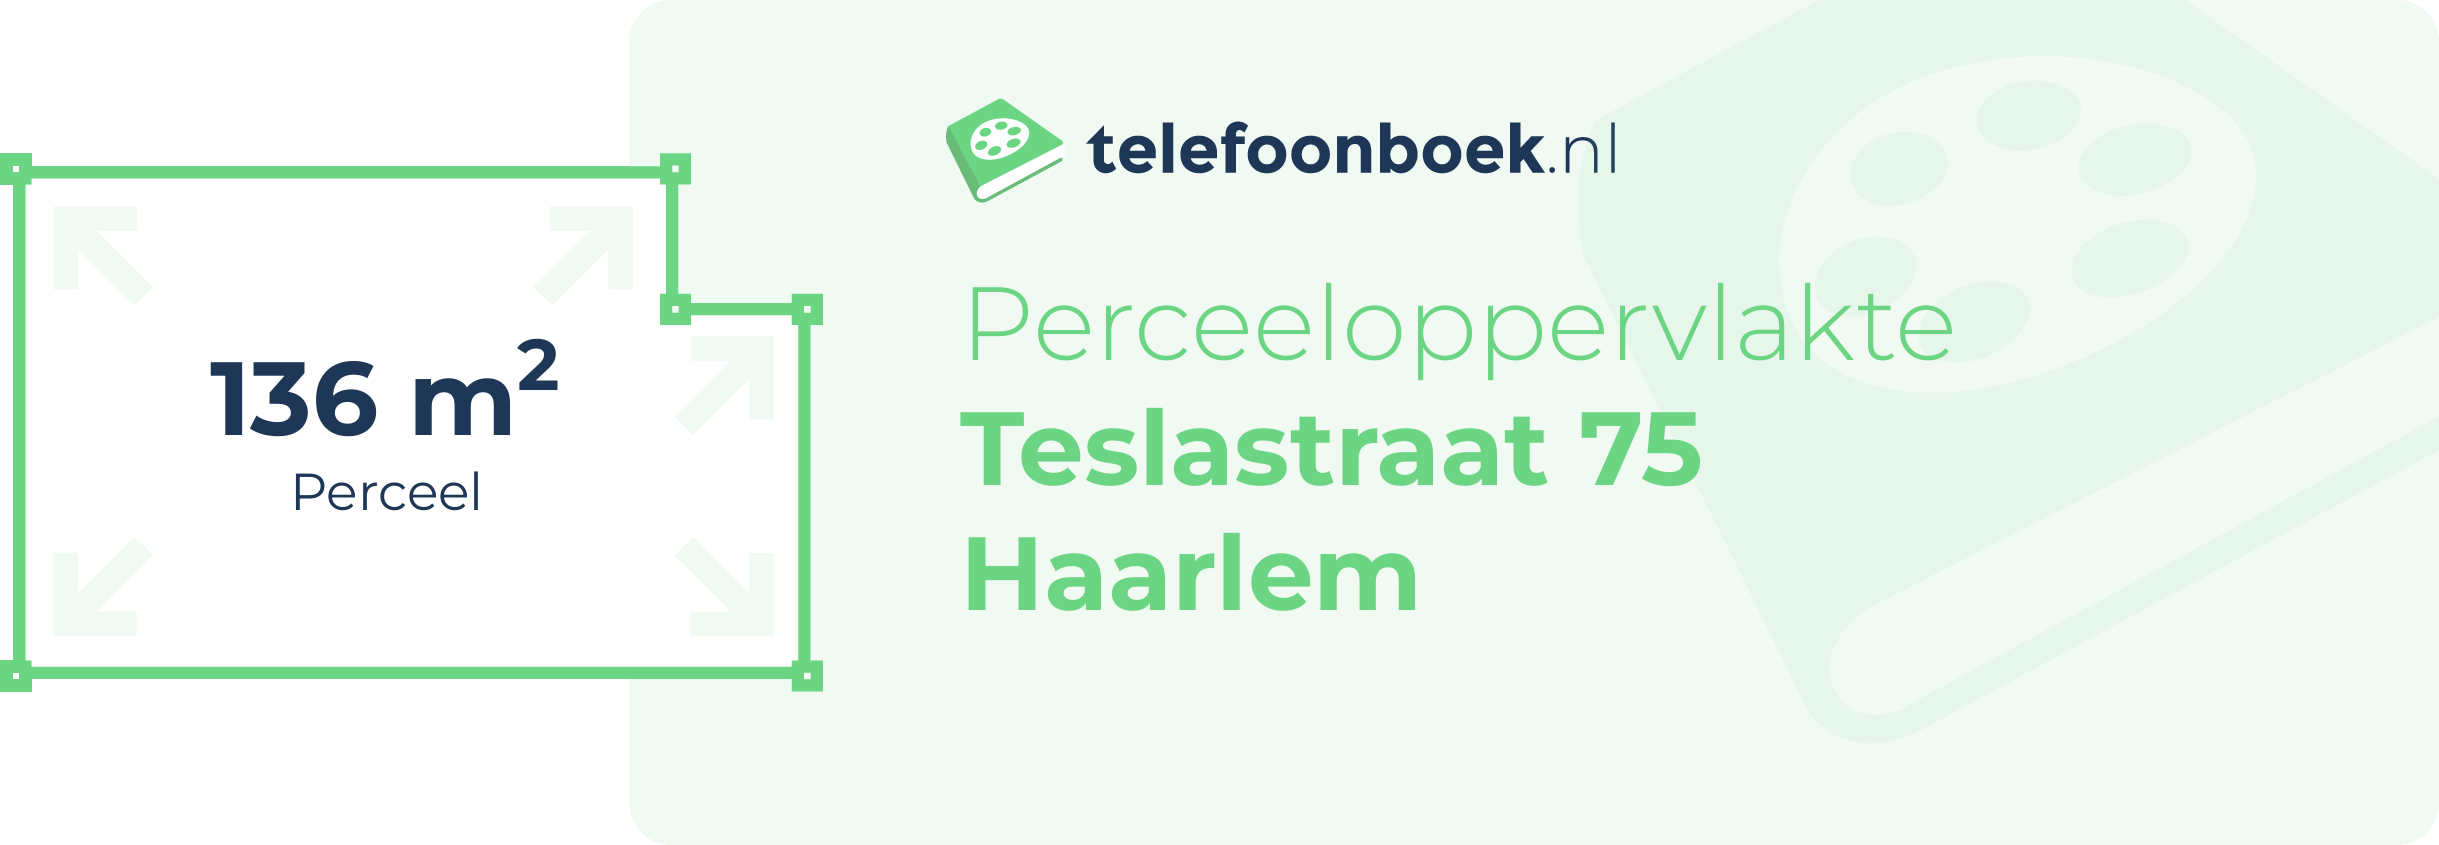 Perceeloppervlakte Teslastraat 75 Haarlem